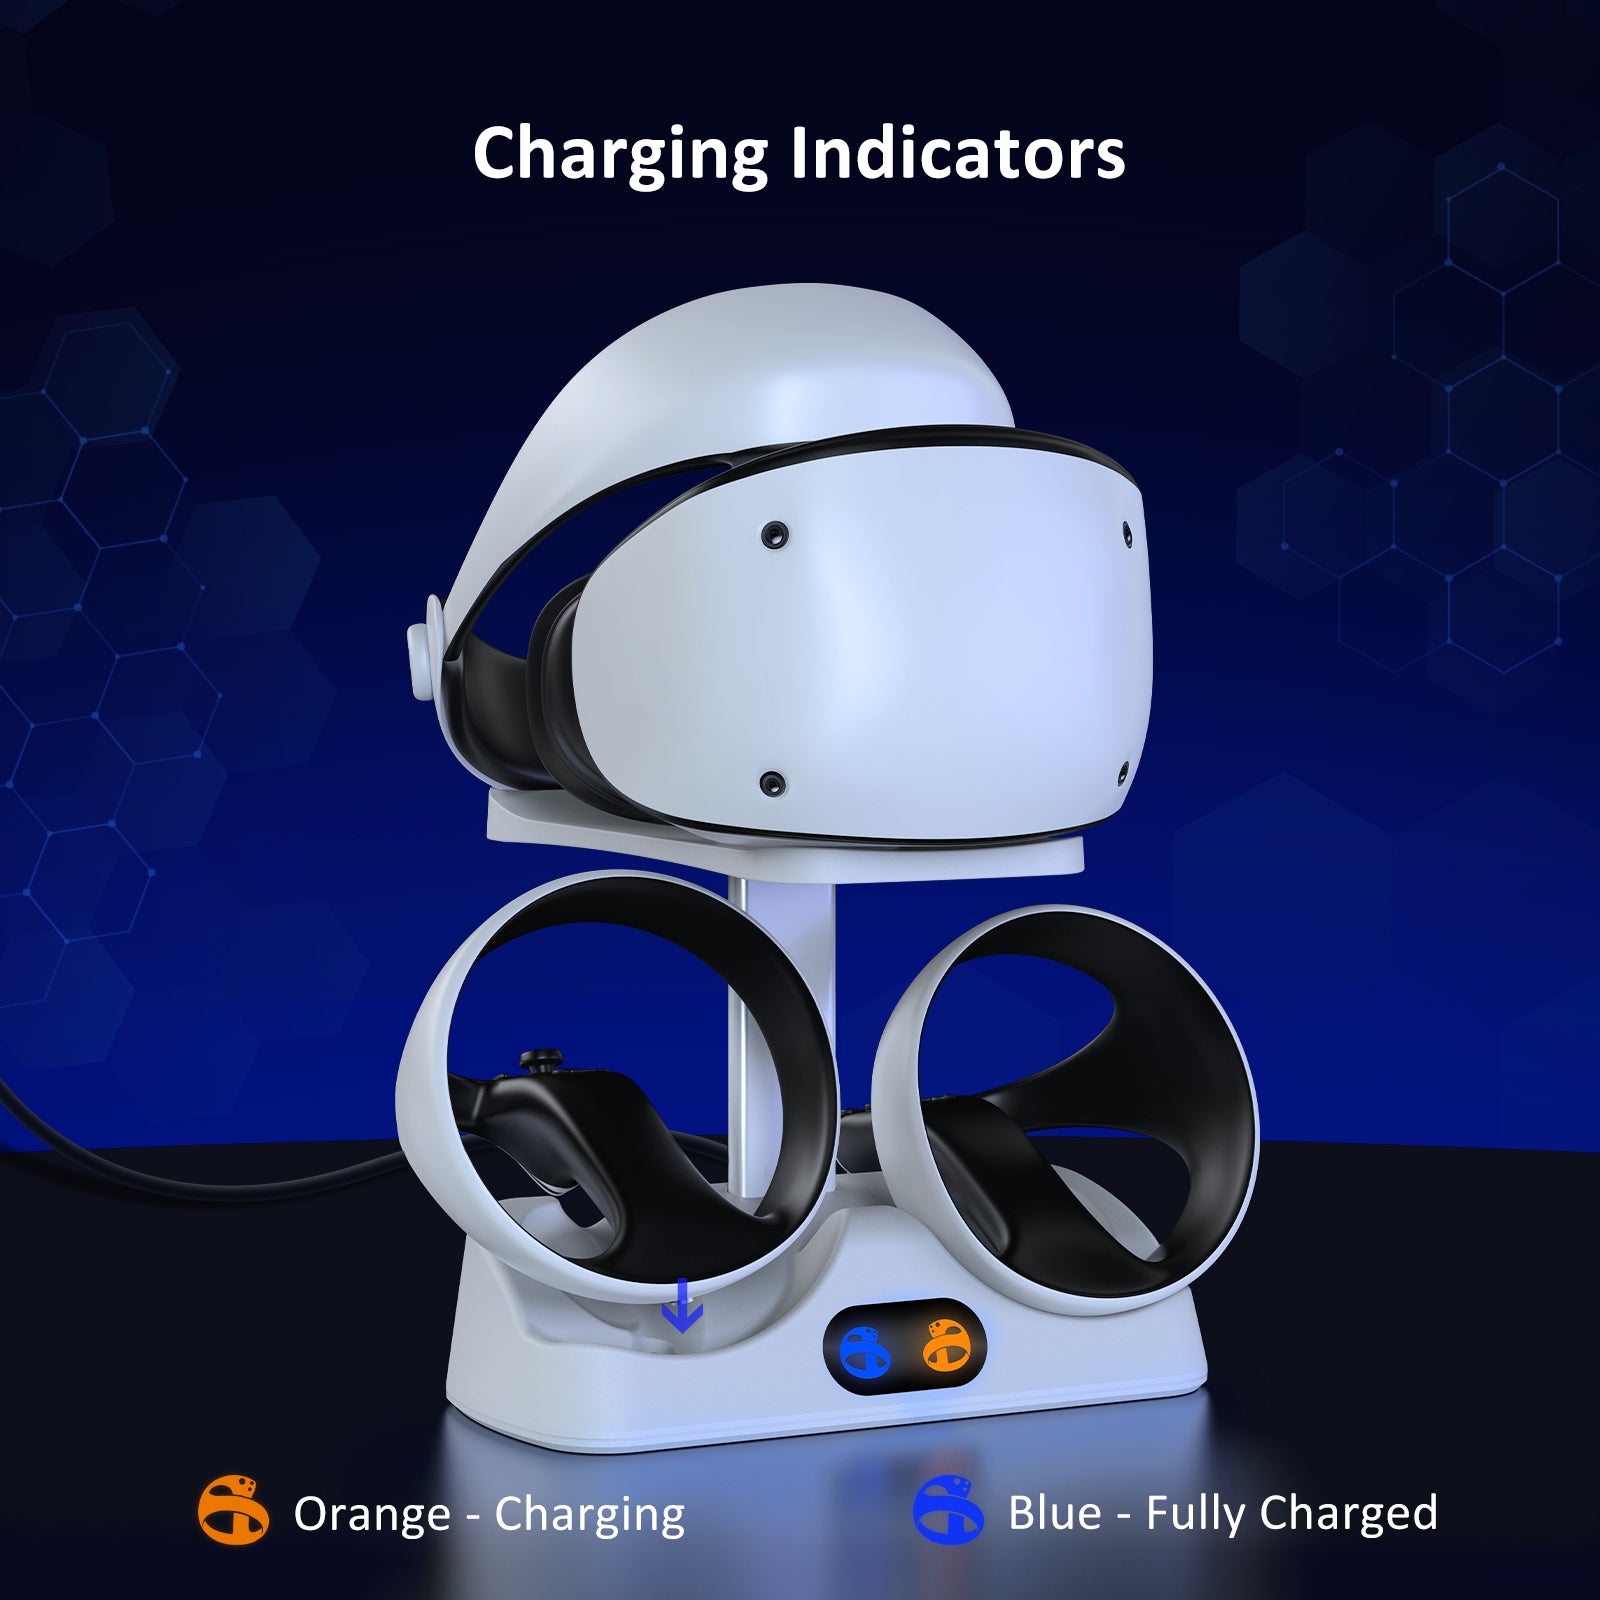 LED Charging Station: Orange light indicates charging, blue light indicates charged/standby